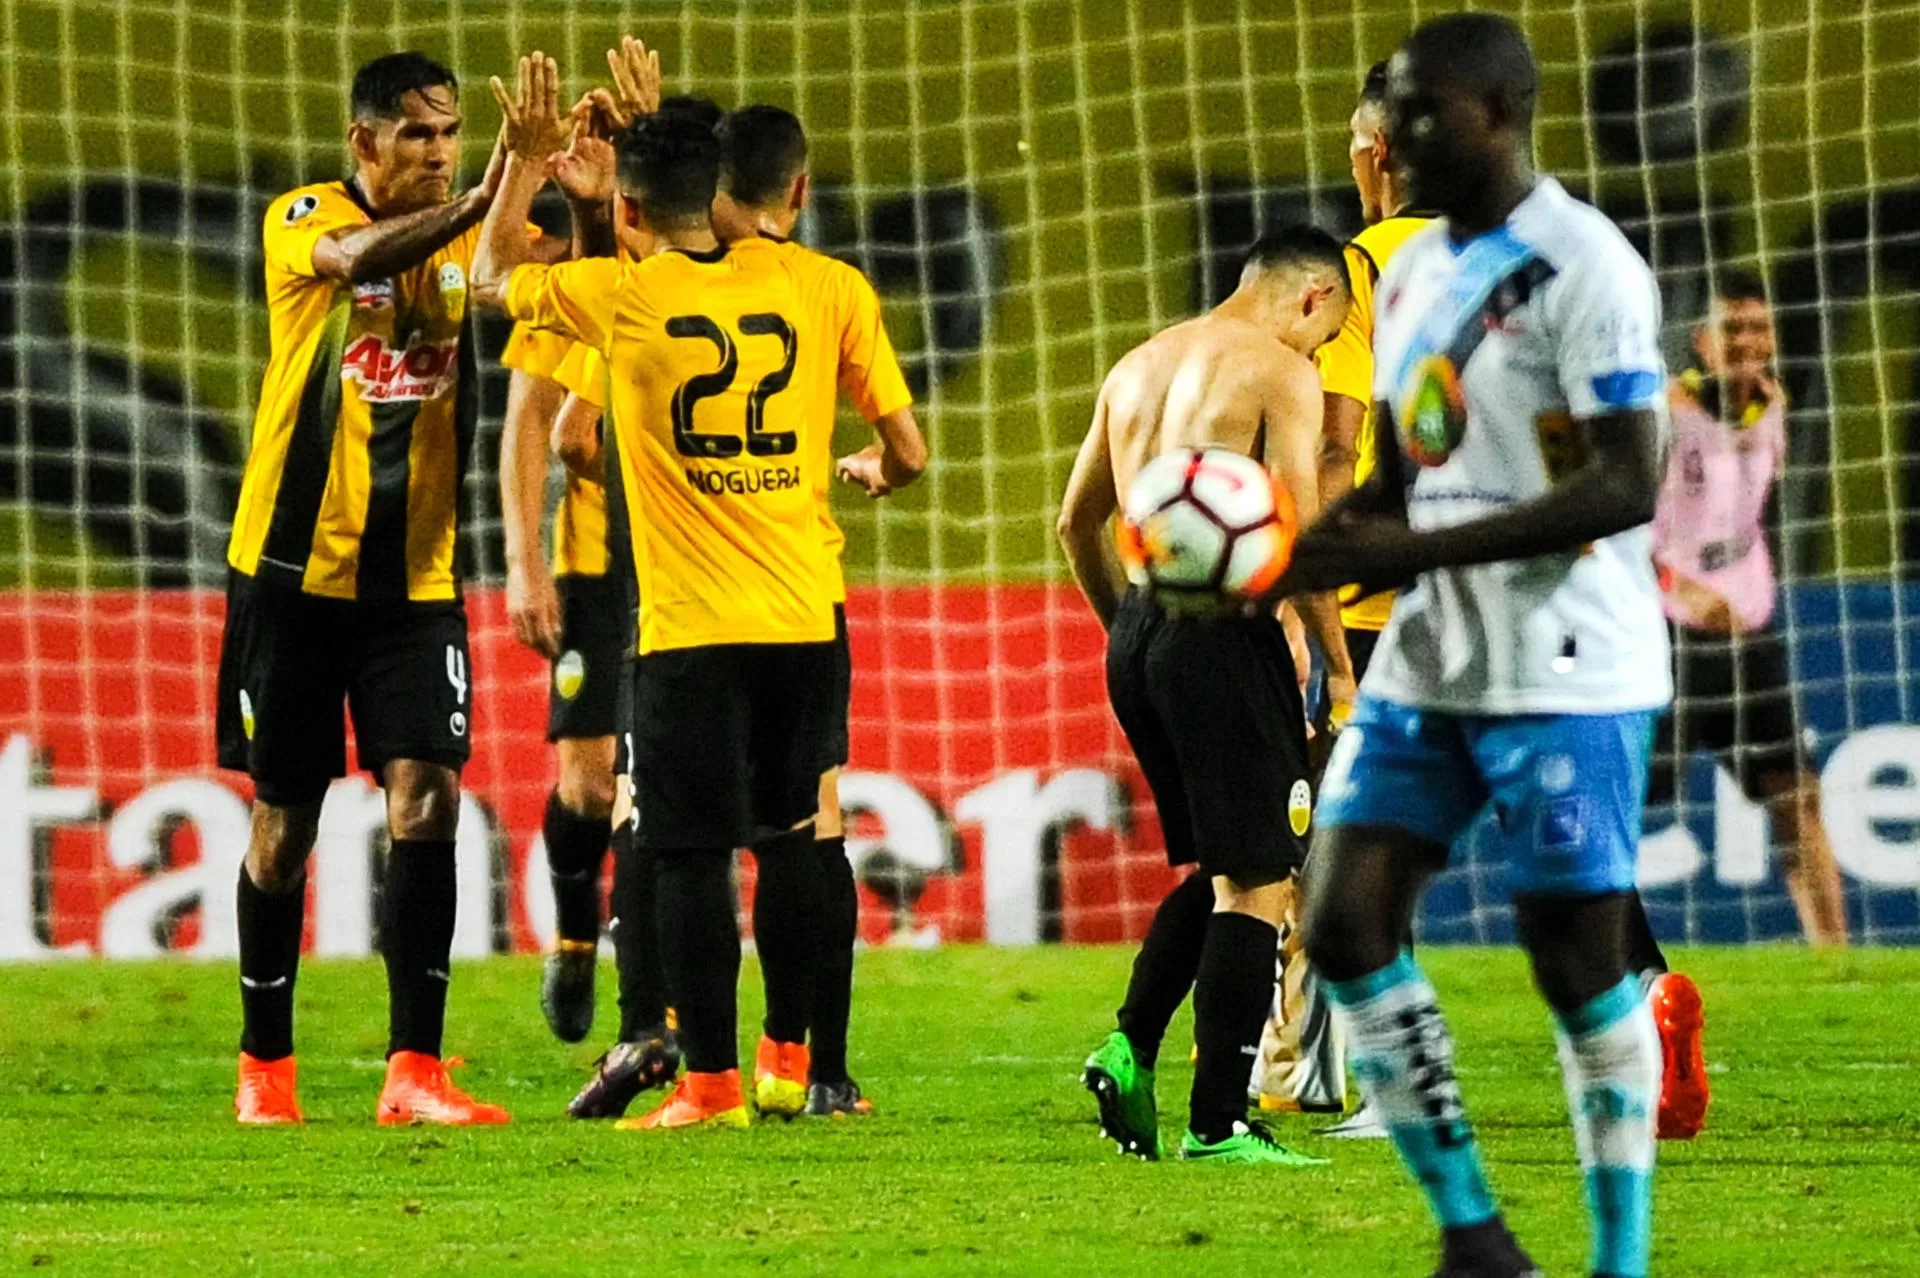 ALT Táchira vence en la tercera jornada y se queda con el liderato del fútbol venezolano